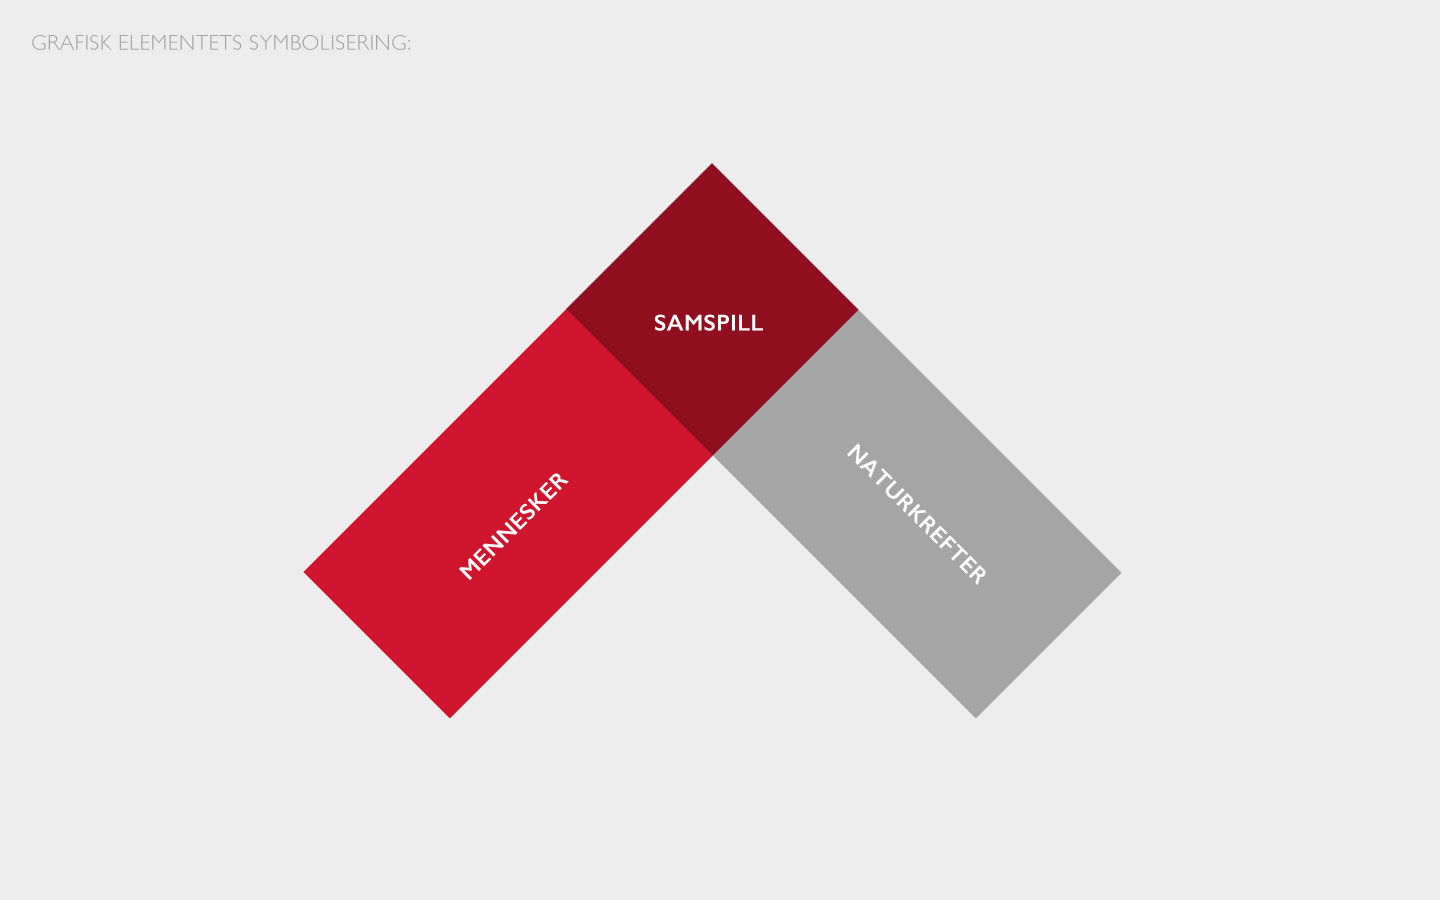 Infografikk som beskriver hvorfor NVE (Norges vassdrags- og energidirektorat) sitt grafiske element ser ut som de gjør. Det er en et rødt rektangel som overlapper ett grått rektangel.